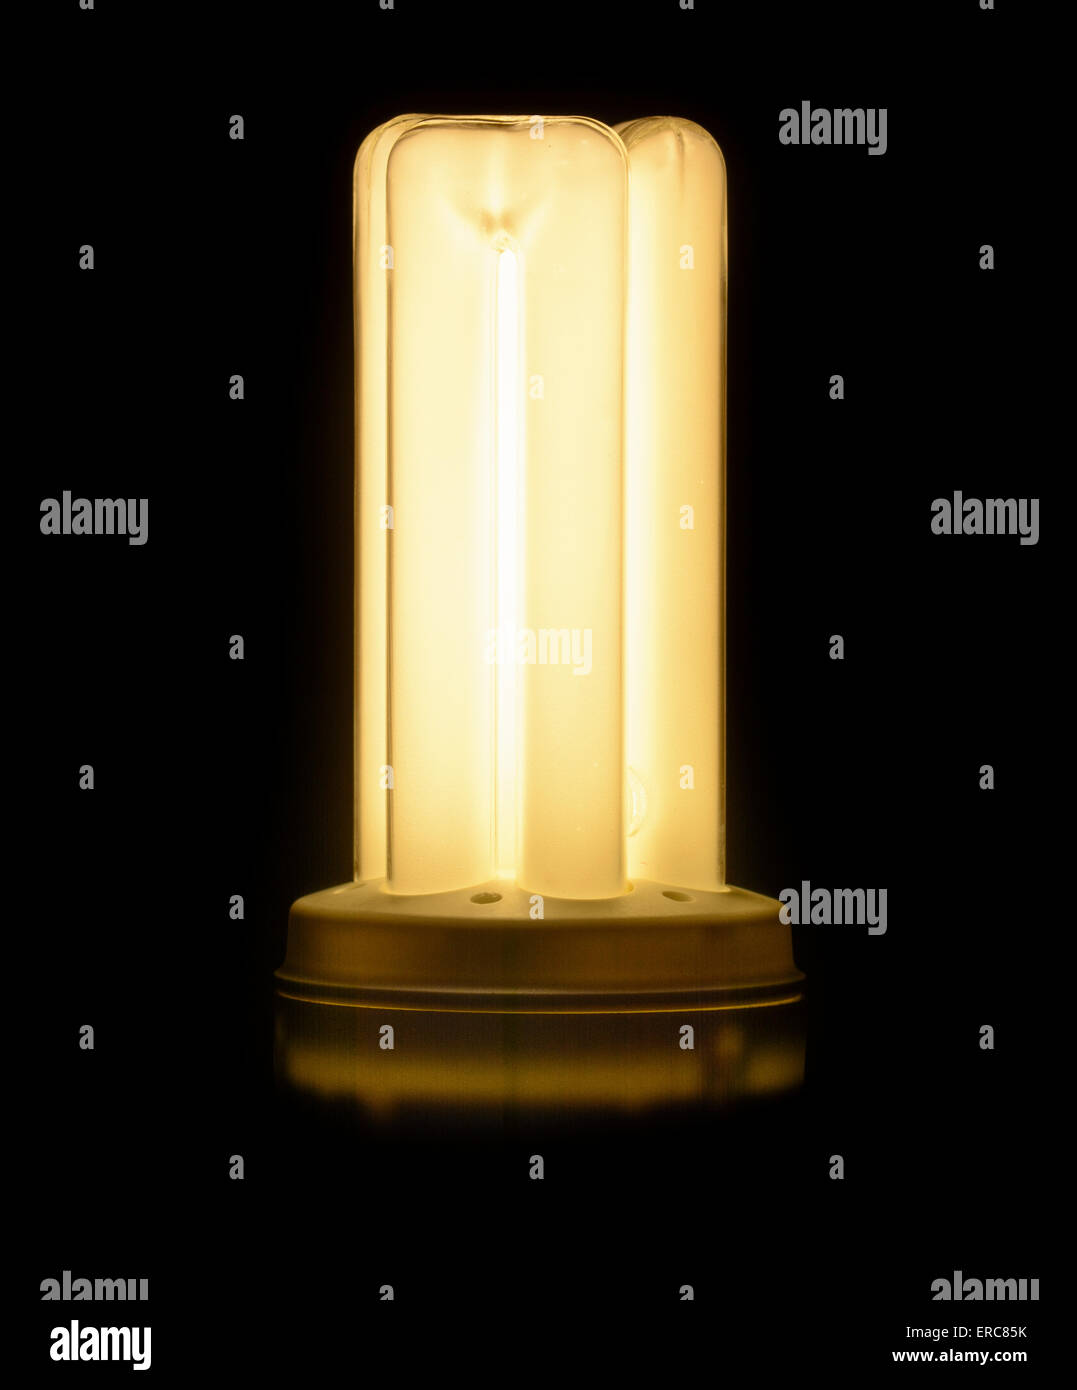 Energiesparende Kompaktleuchtstofflampen (CFL-Lampe Glühbirne) - Eingeschaltet. Stockfoto